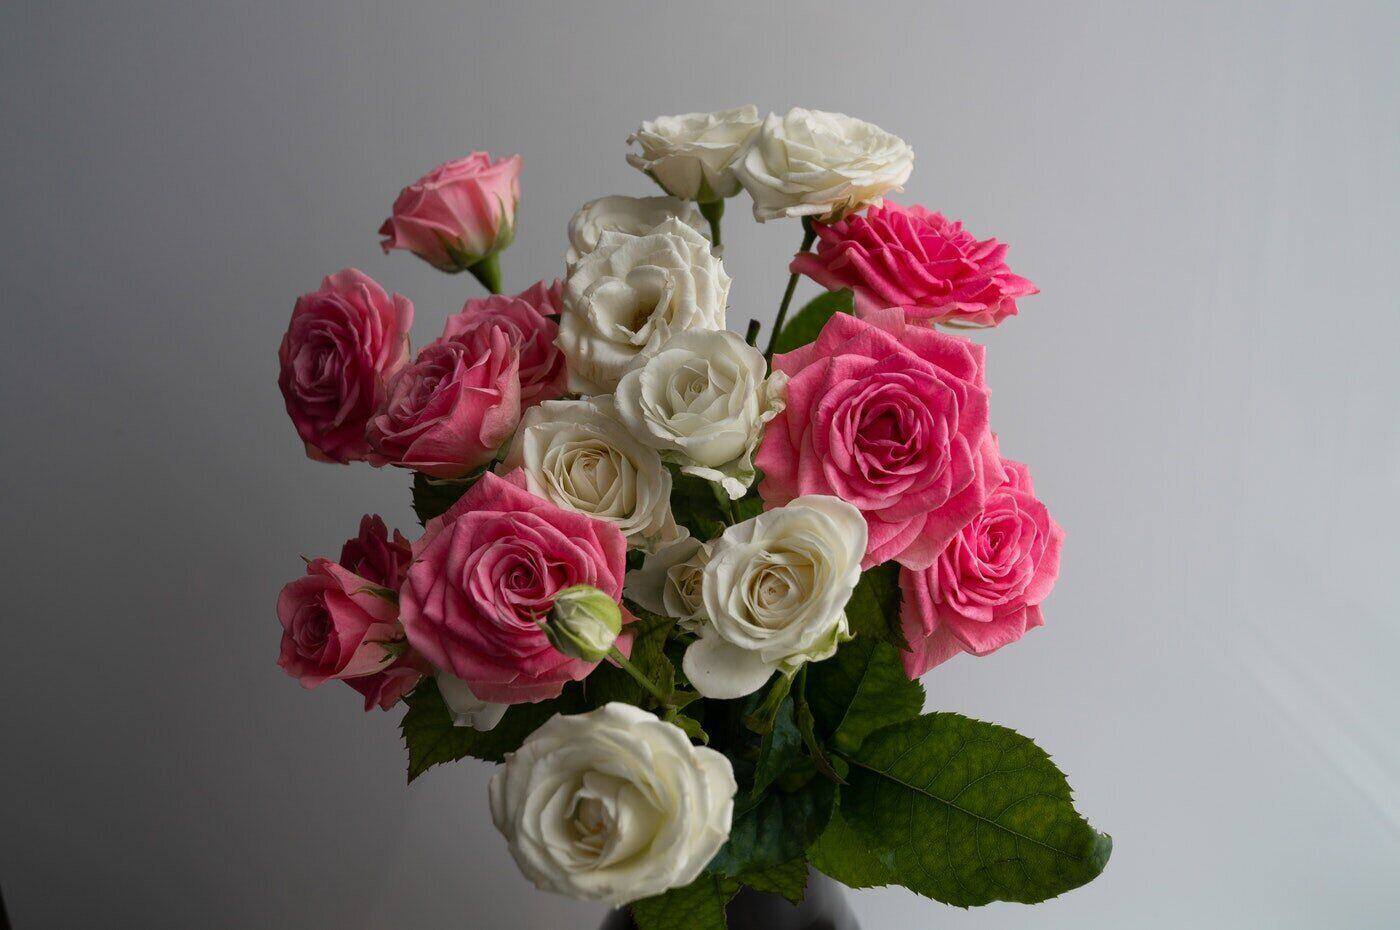 rosas rosa e brancas - guia para dar flores pela primeira vez